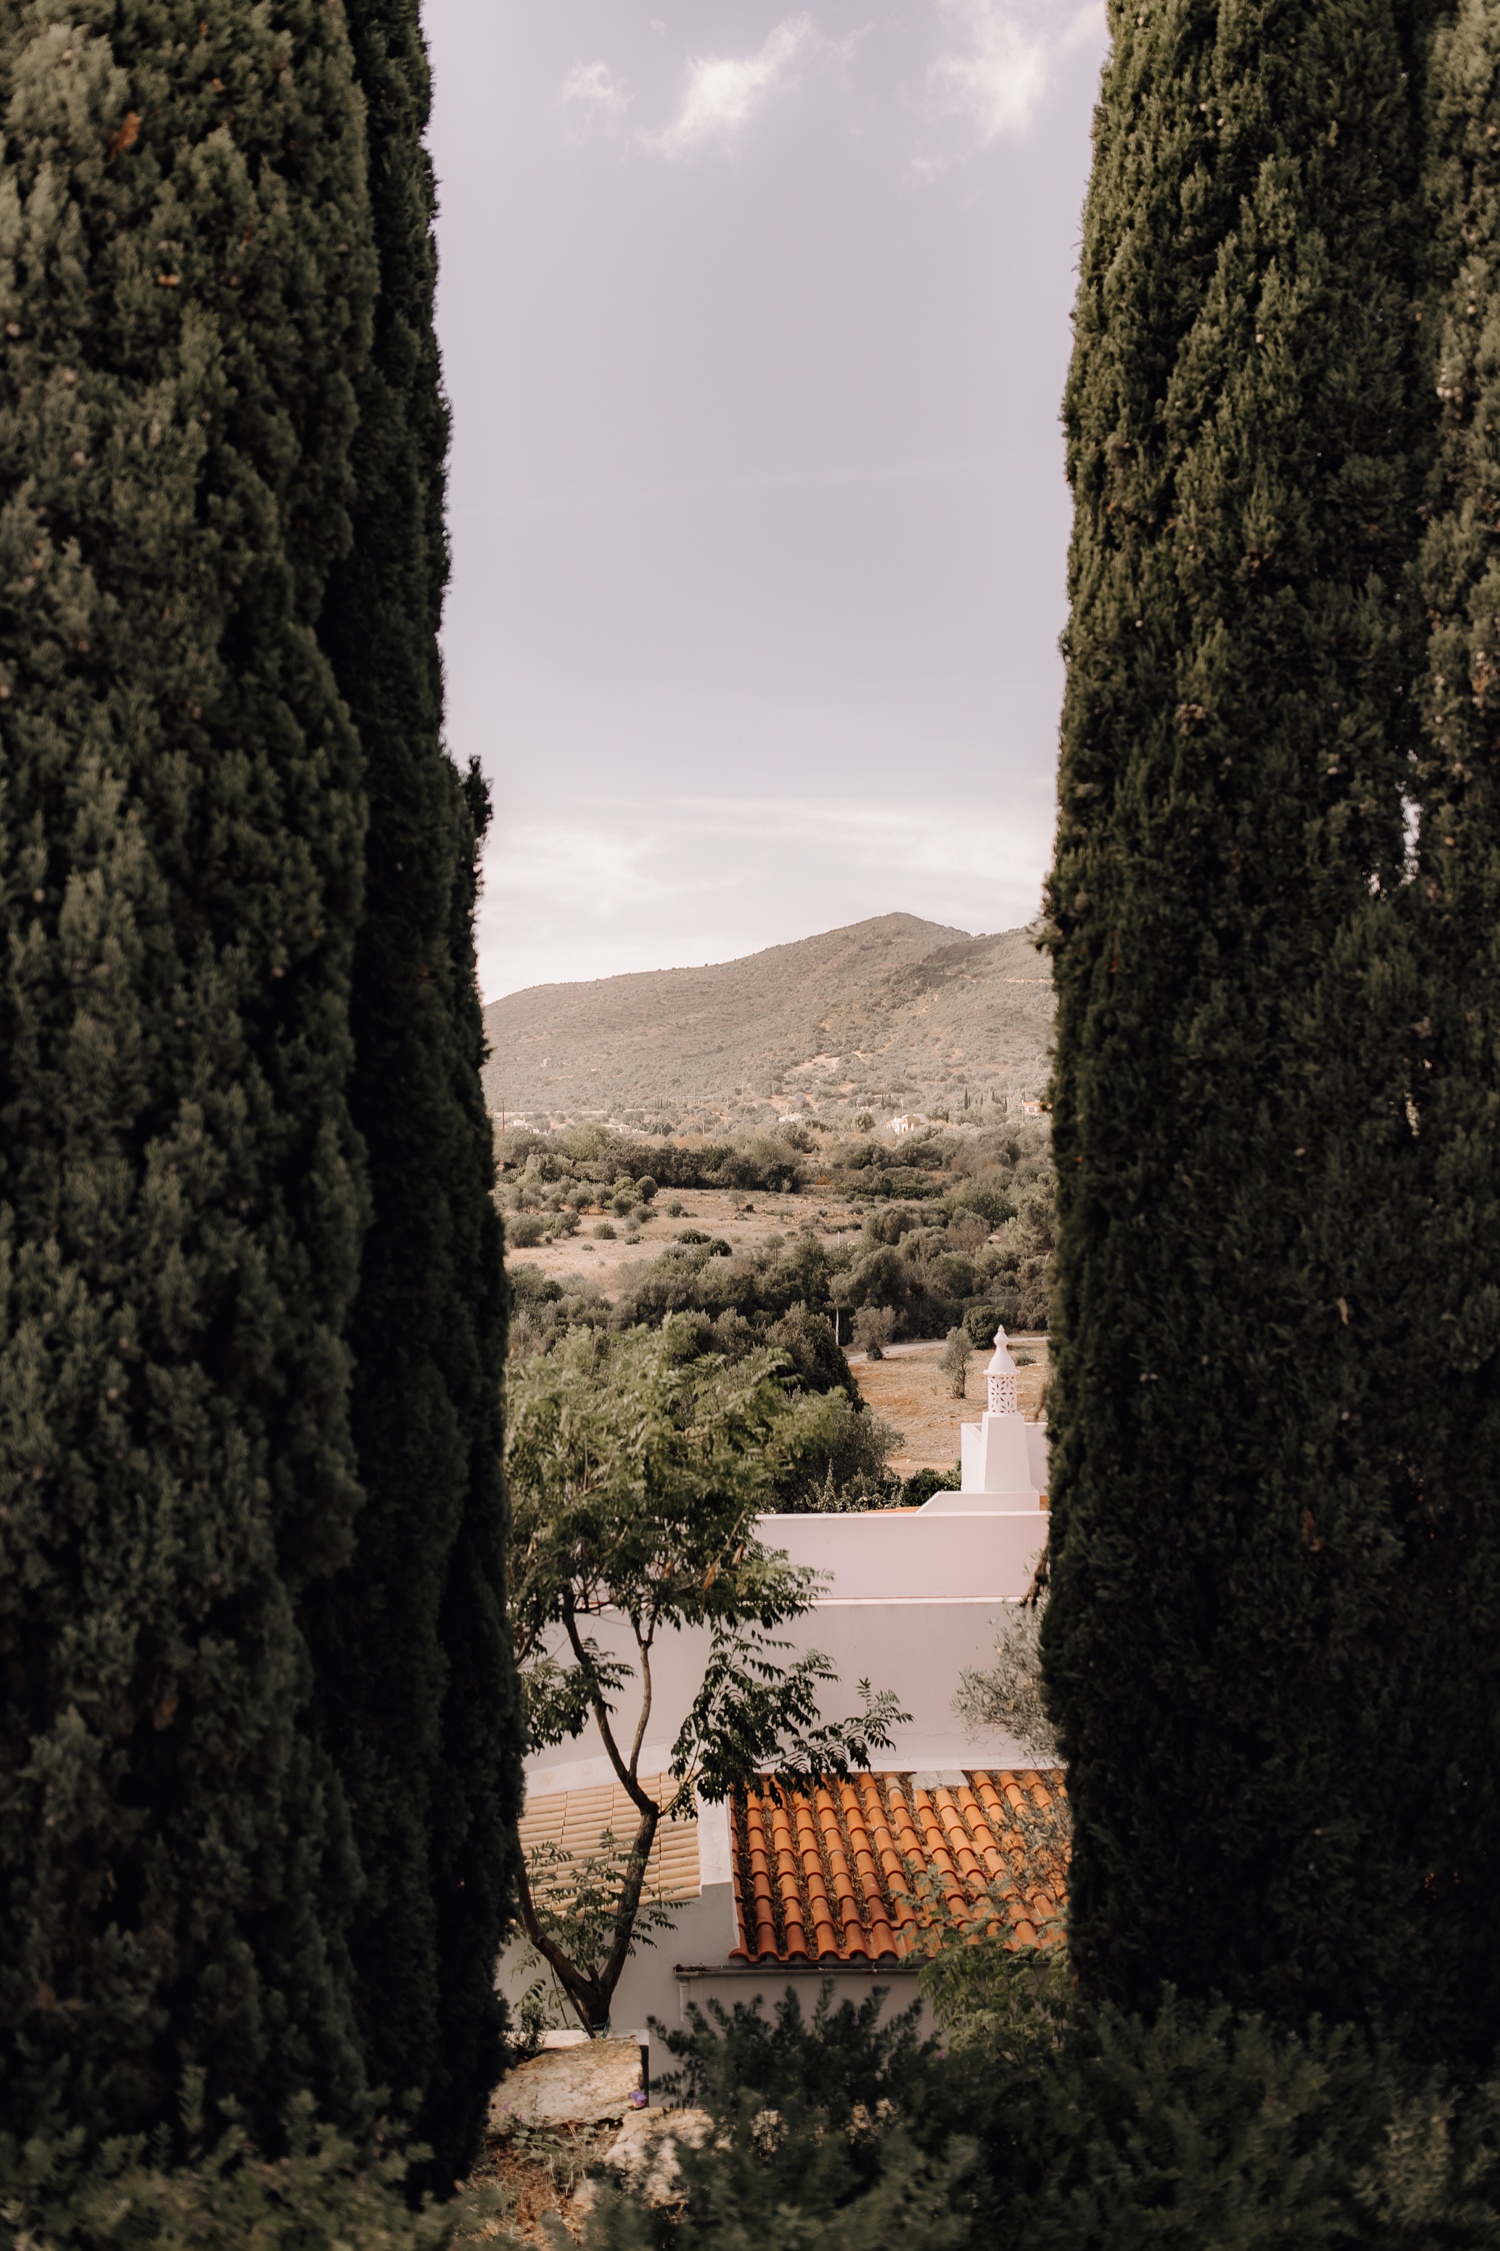 Huwelijksfotograaf buitenland - uitzicht vanaf octant Vila Monte in Portugal